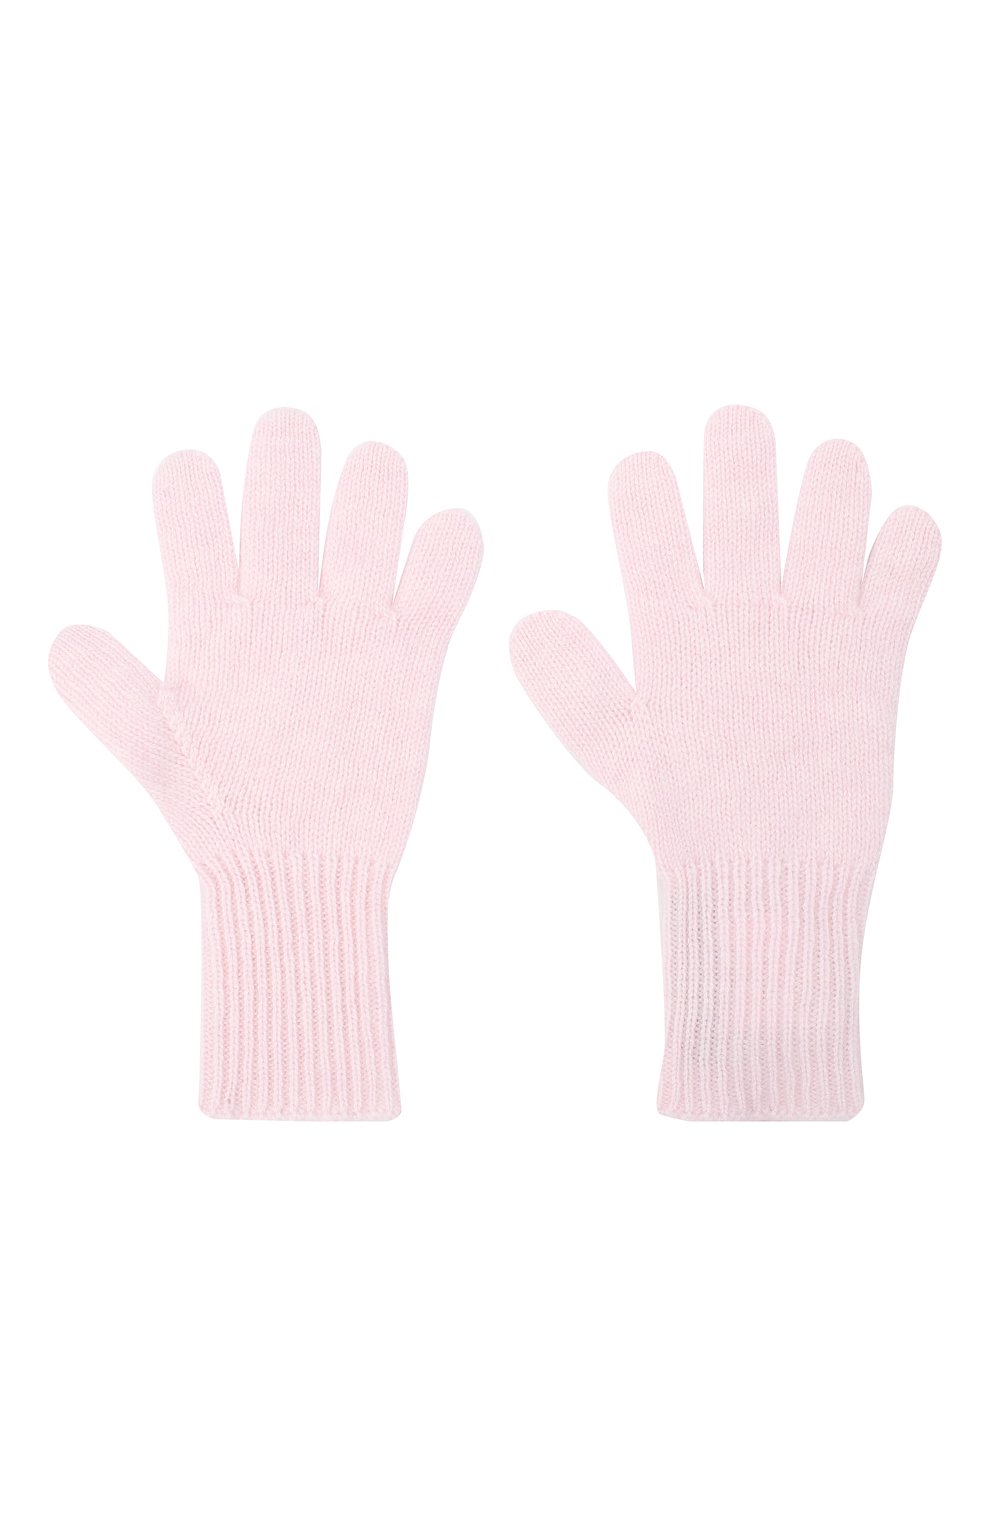 Детские кашемировые перчатки GIORGETTI CASHMERE розового цвета, арт. MB1699/12A | Фото 2 (Материал: Текстиль, Кашемир, Шерсть)